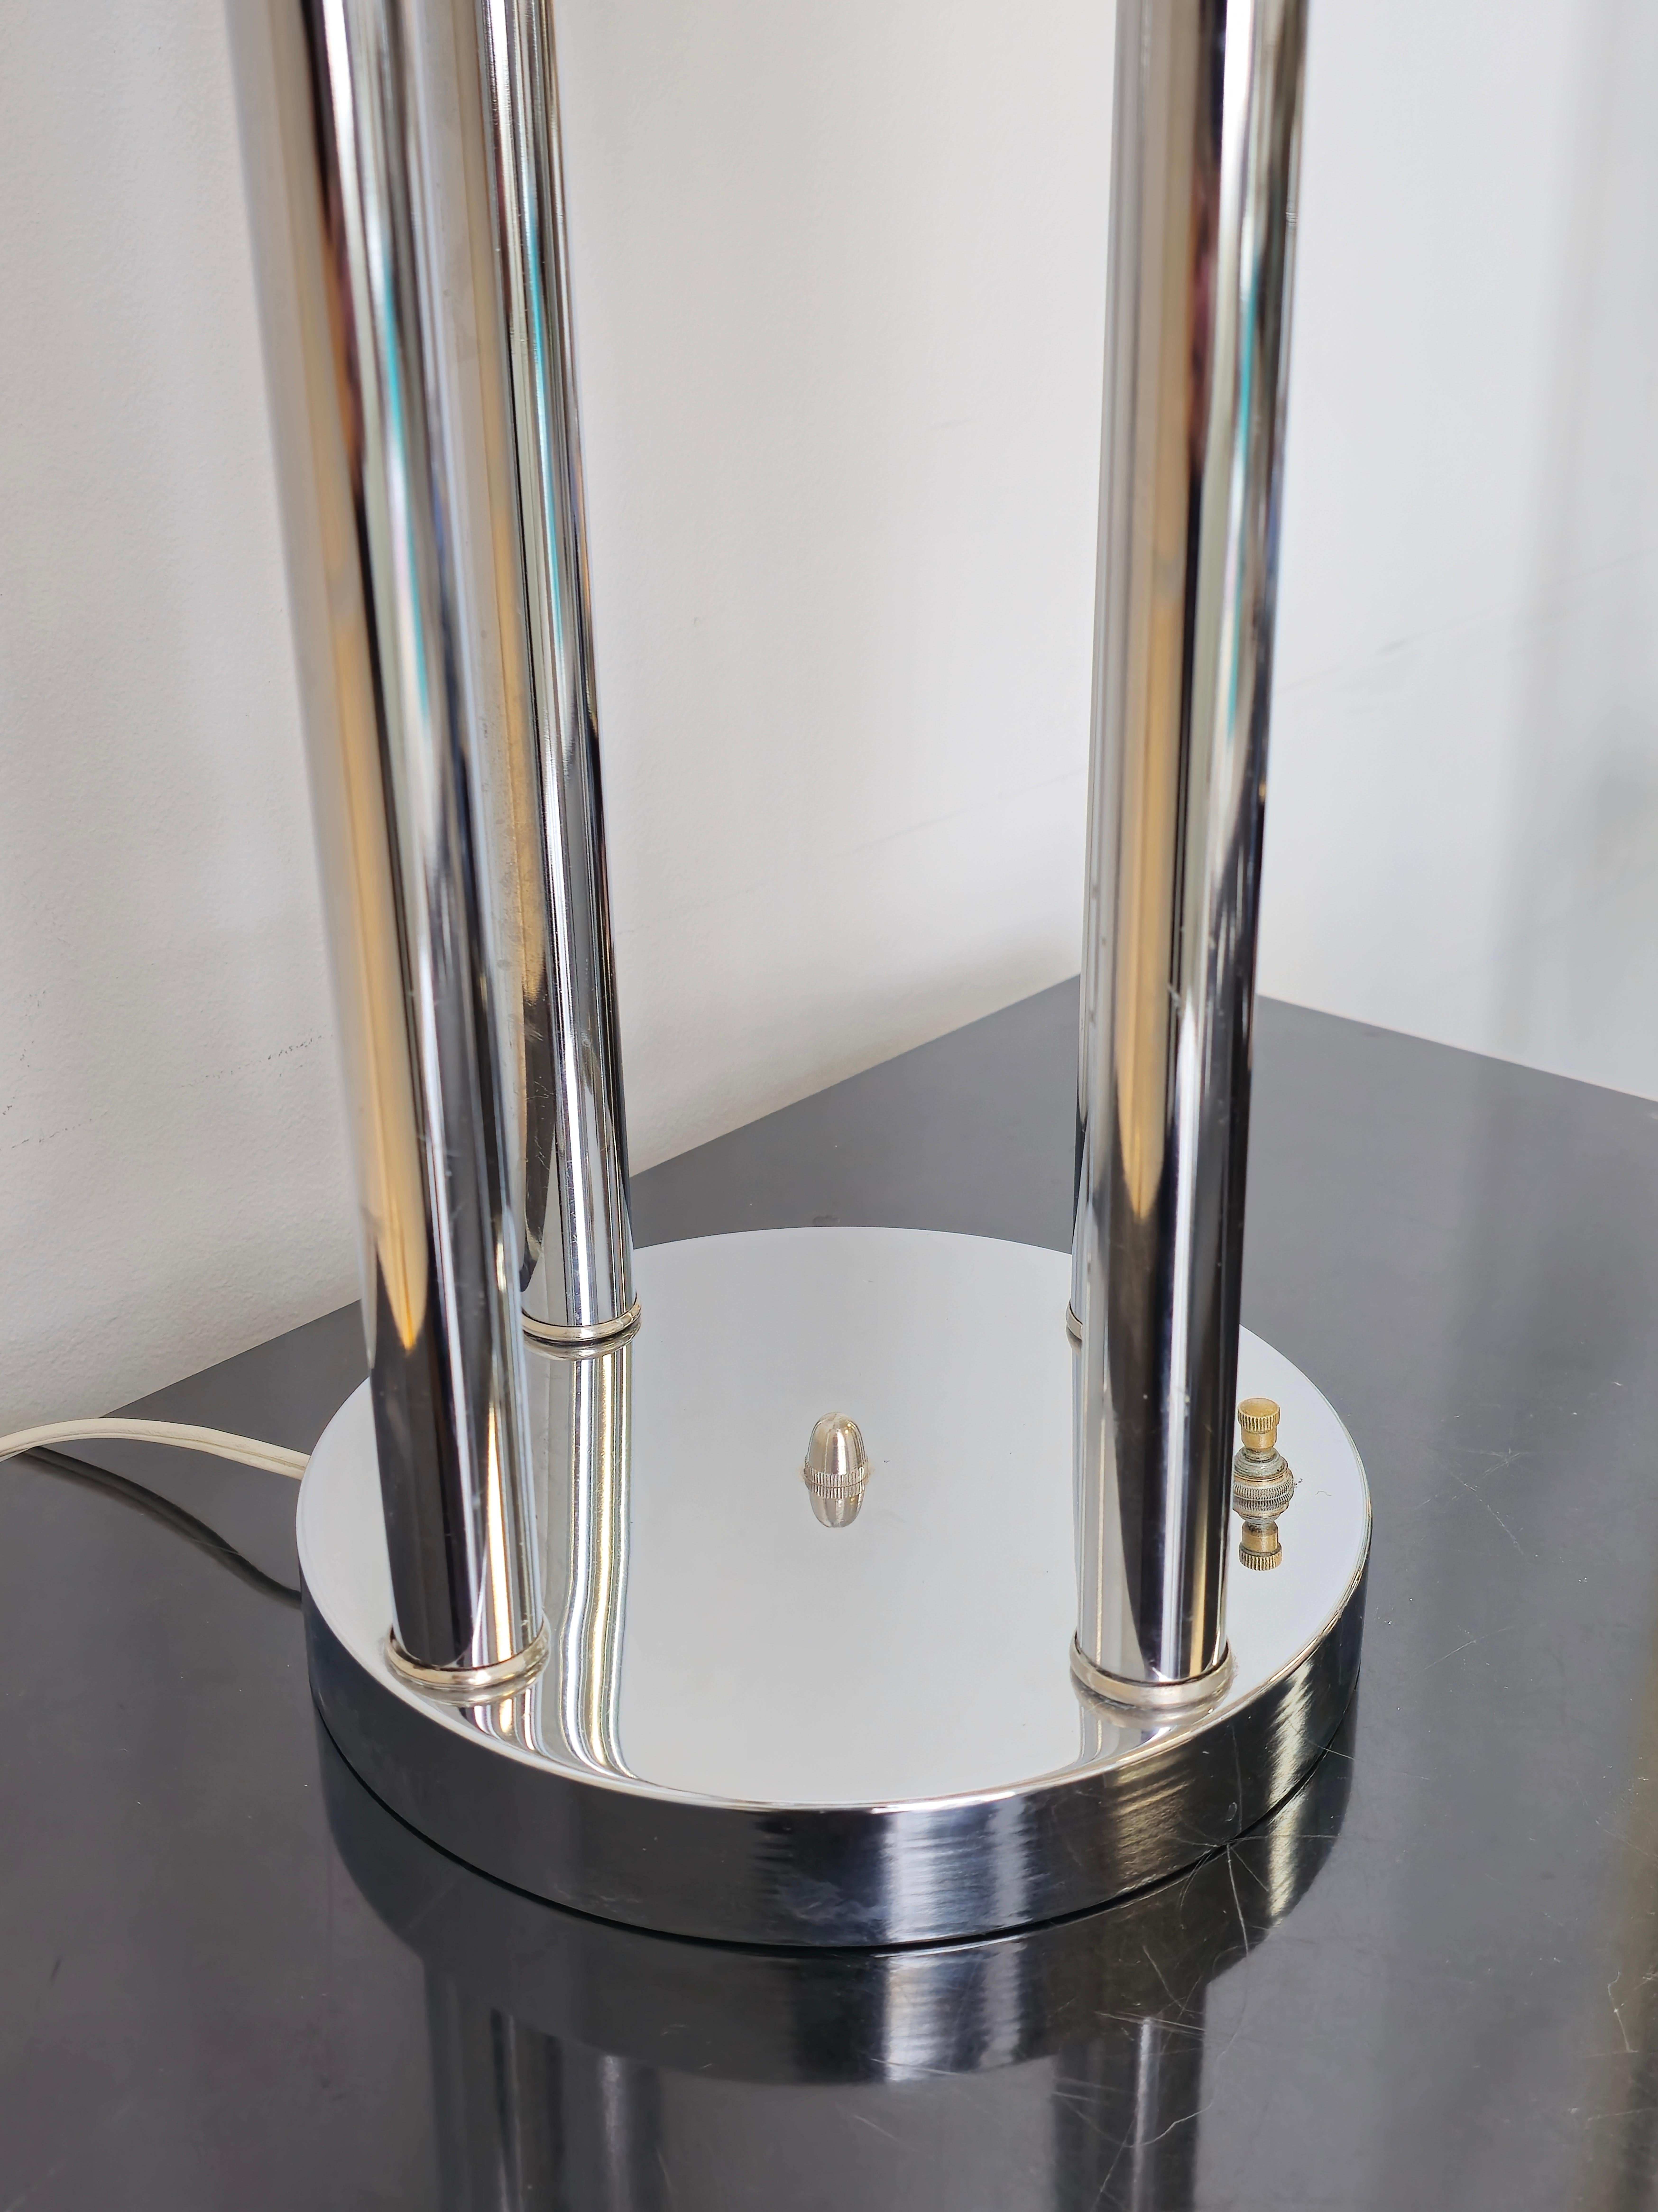 Super coole verchromte Tischlampe im Space-Age-Stil. Diese Tischlampe stammt aus den 1970er Jahren. Er verfügt über vier Etagen in unterschiedlichen Höhen. Die vier Stiele der Lampe sind jeweils an einer runden Kugel befestigt, die eine Glühbirne